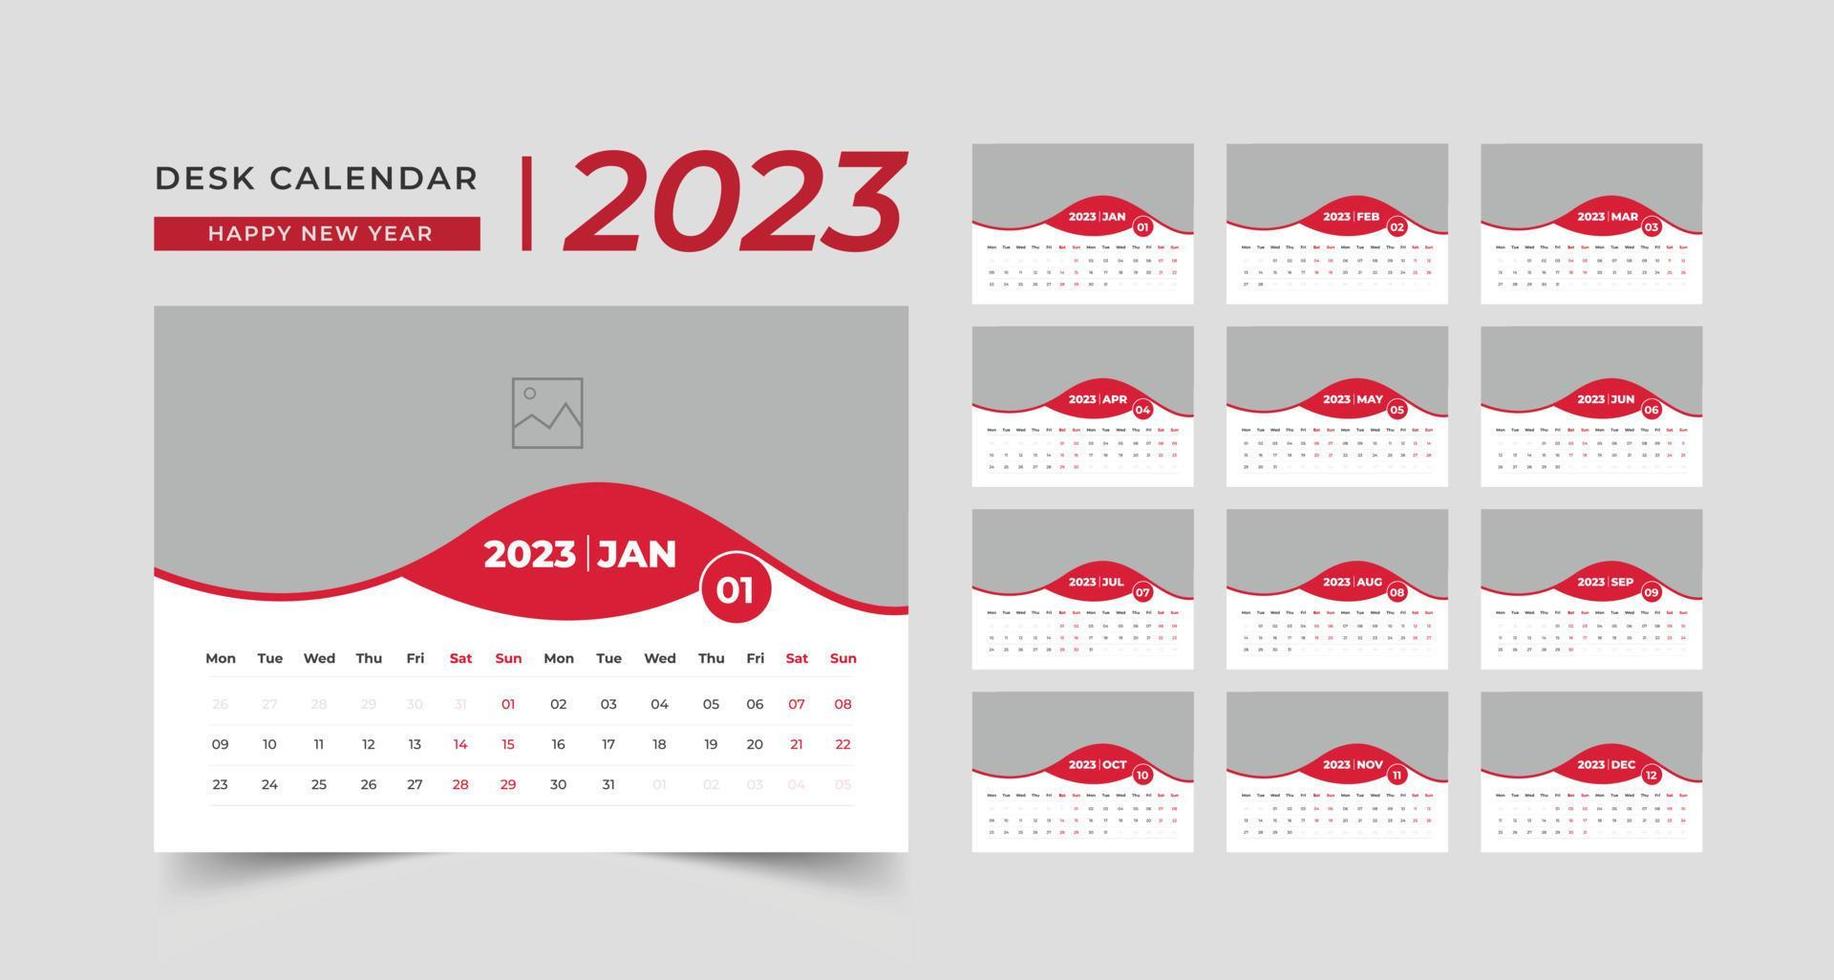 Set Desk Calendar 2023 template Creative design, 12 months included, corporate desk calendar vector